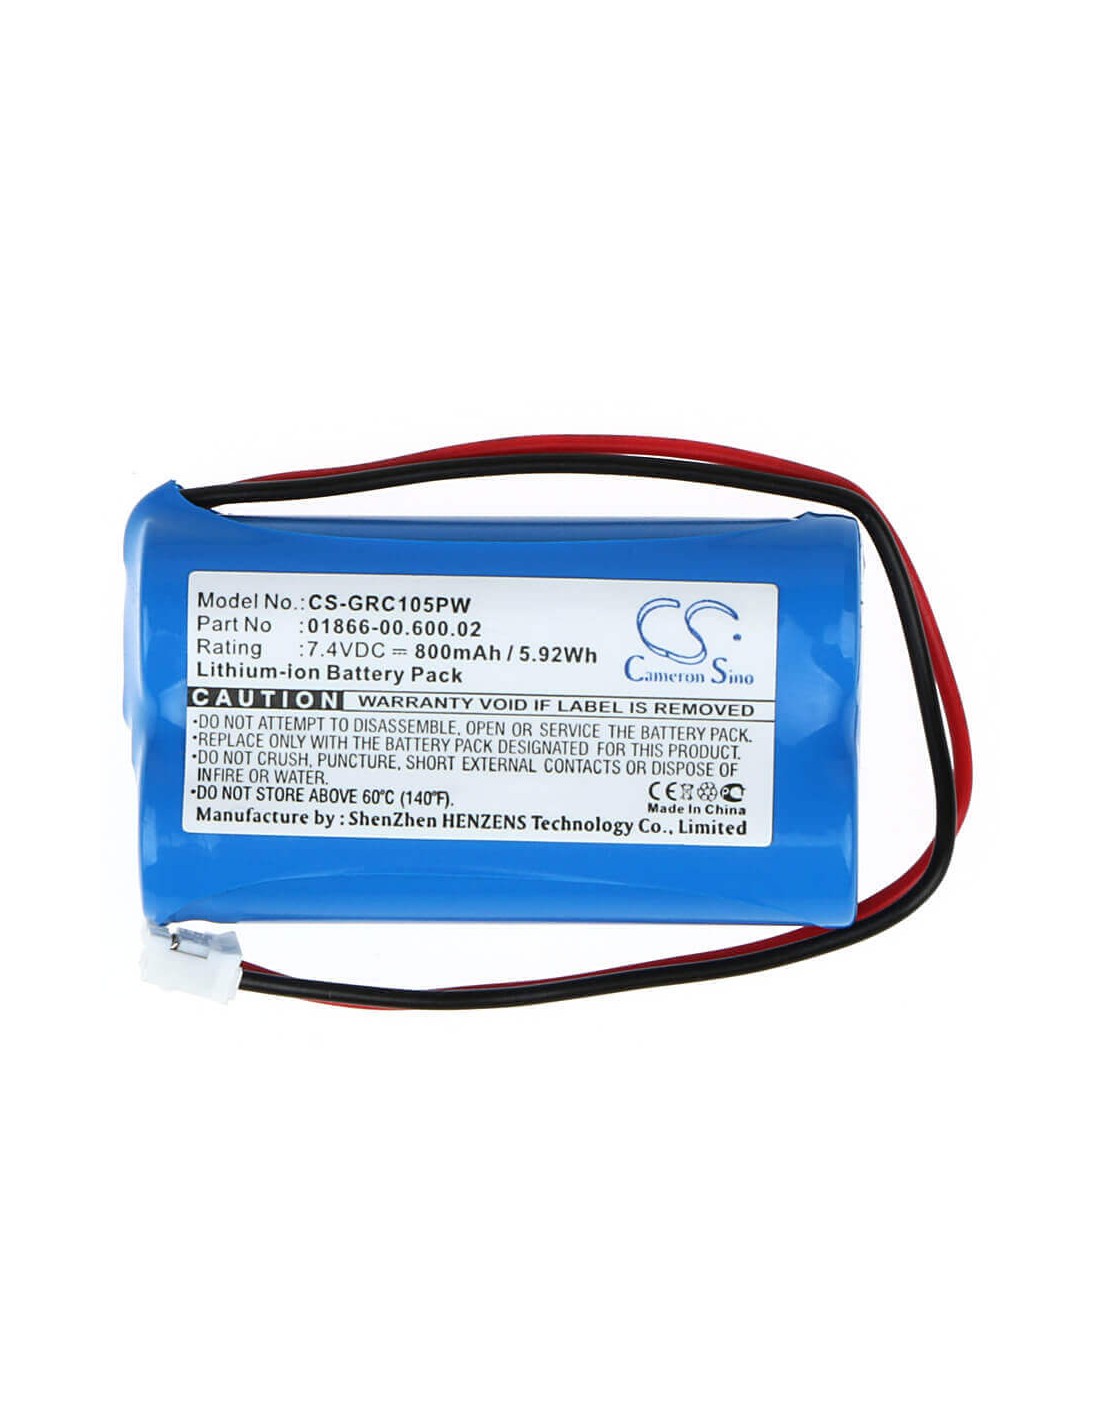 Battery for Gardena C1060 Plus Solar 7.4V, 800mAh - 5.92Wh